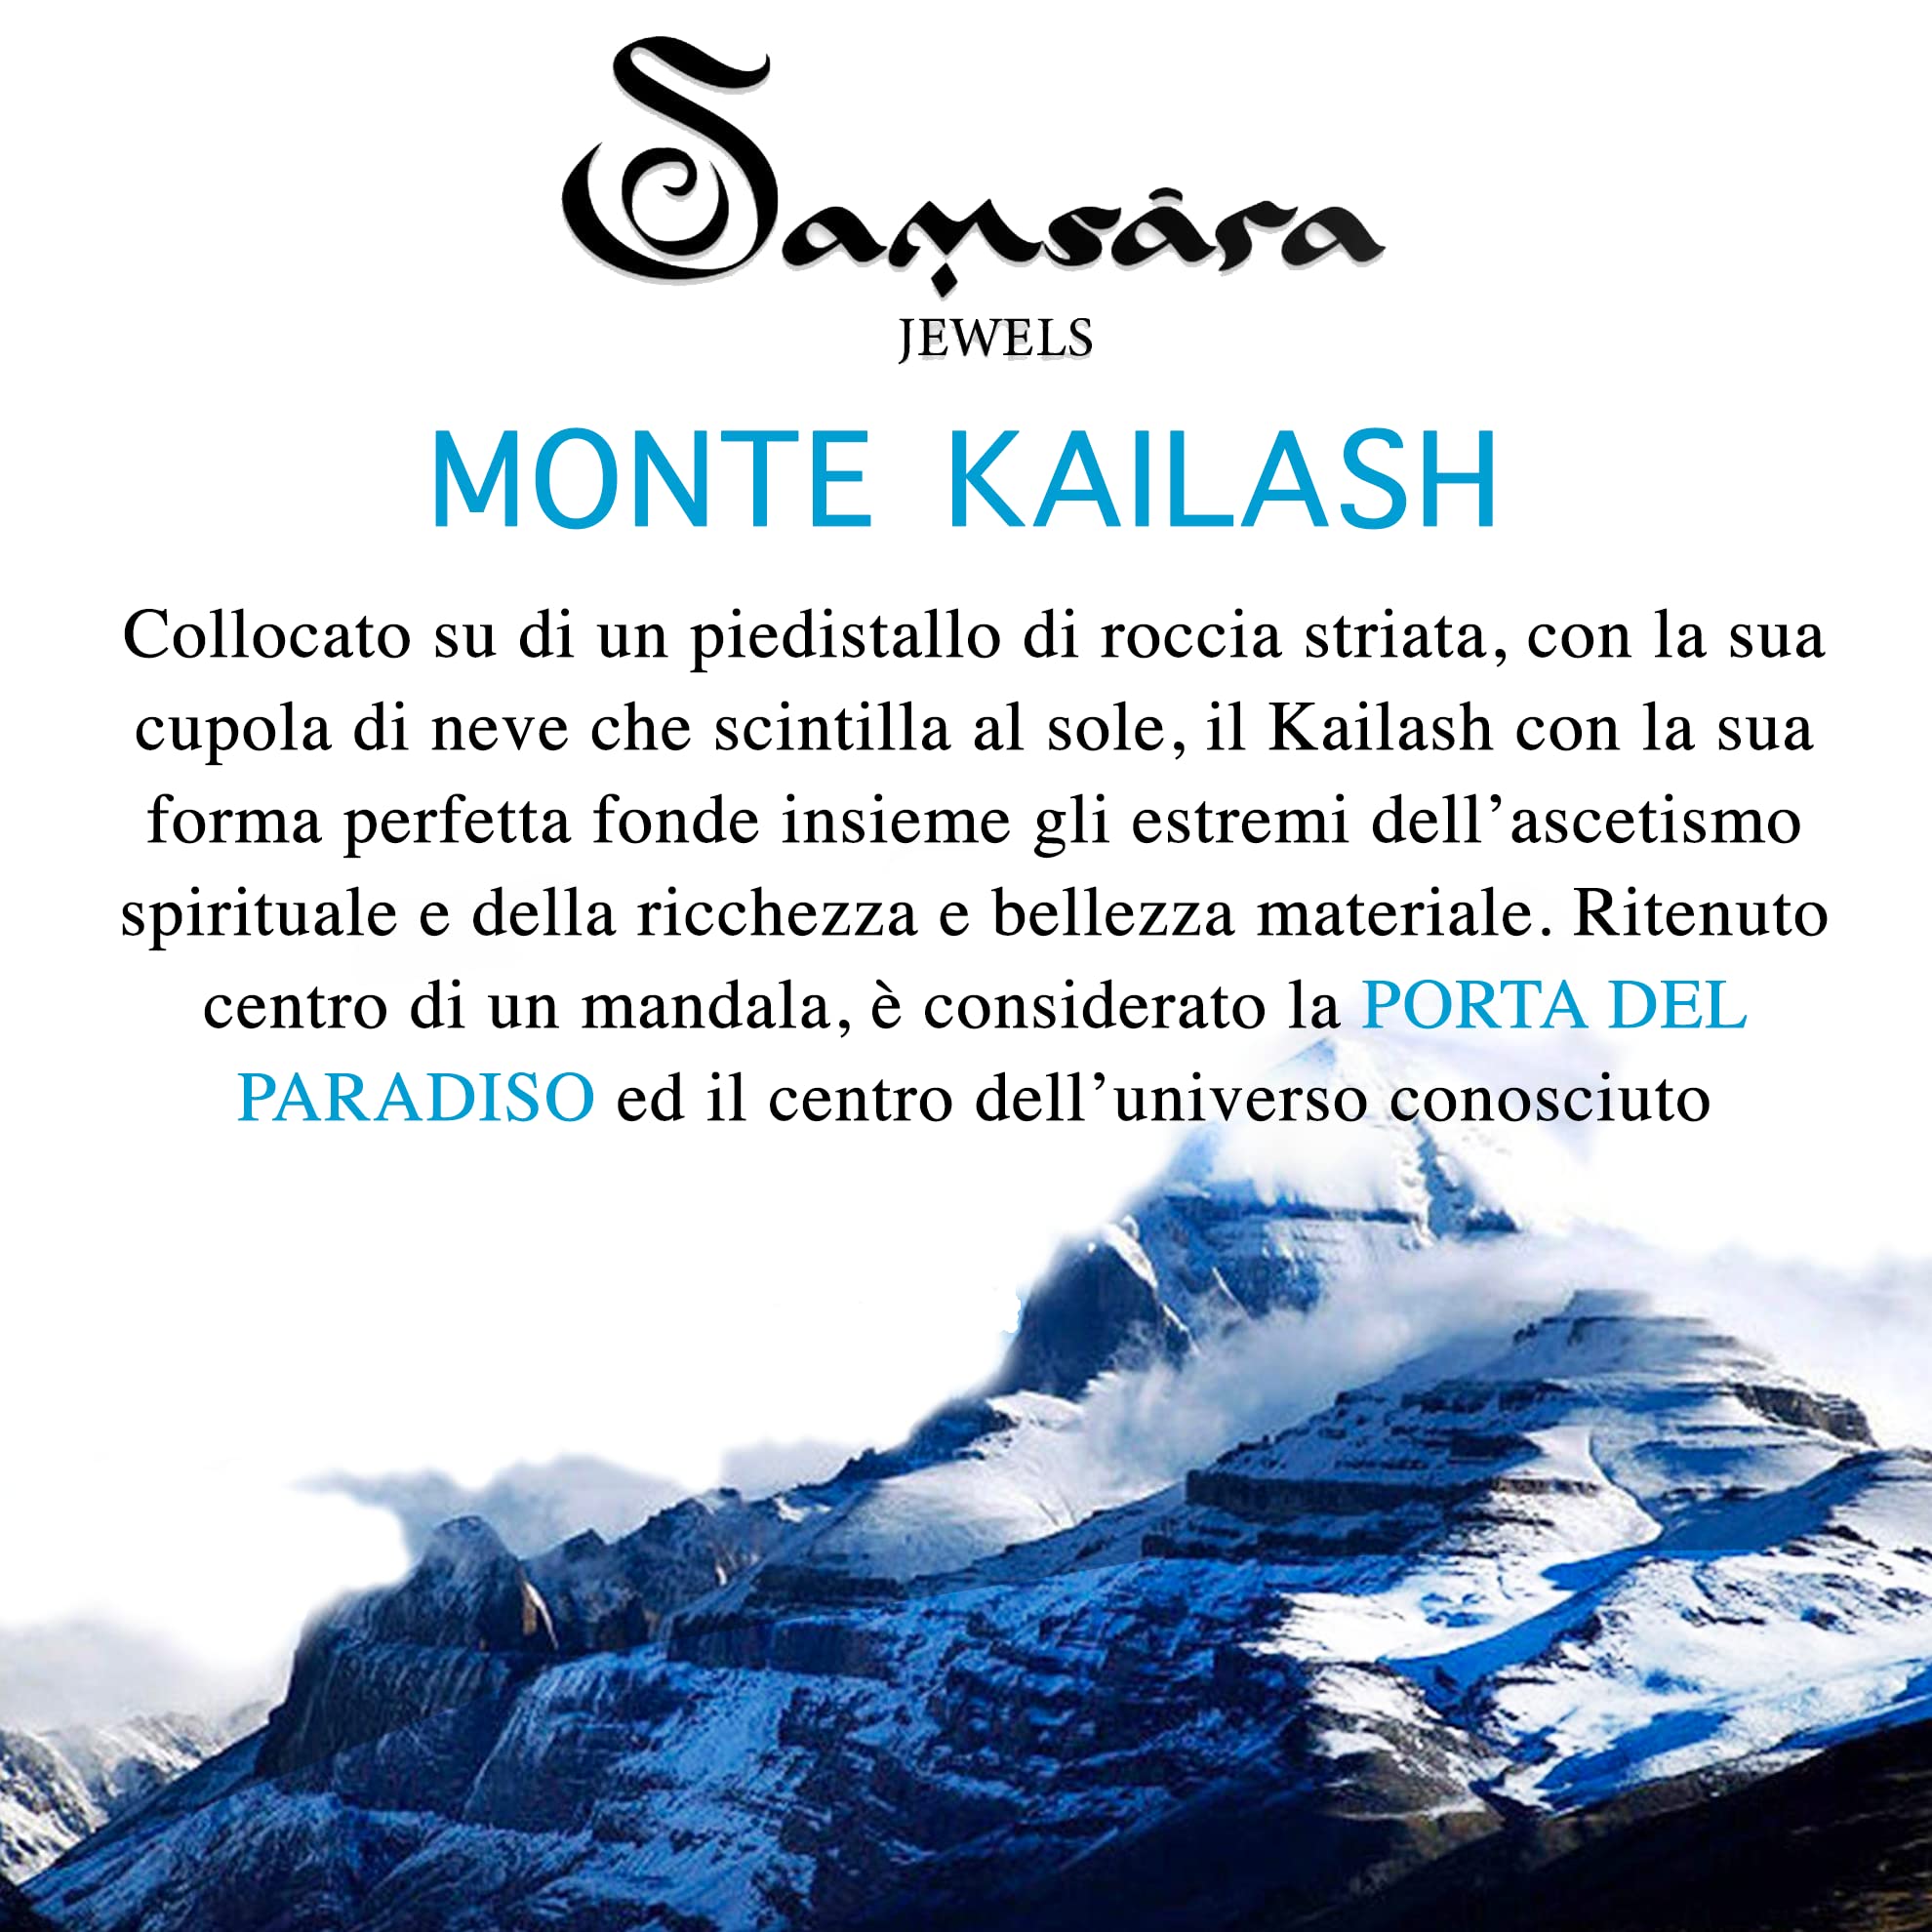 Samsara Bracciale Kailash Tibetano Buddista - Bracciale Spirituale Con Madreperla - Filo in cotone cerato Bianco